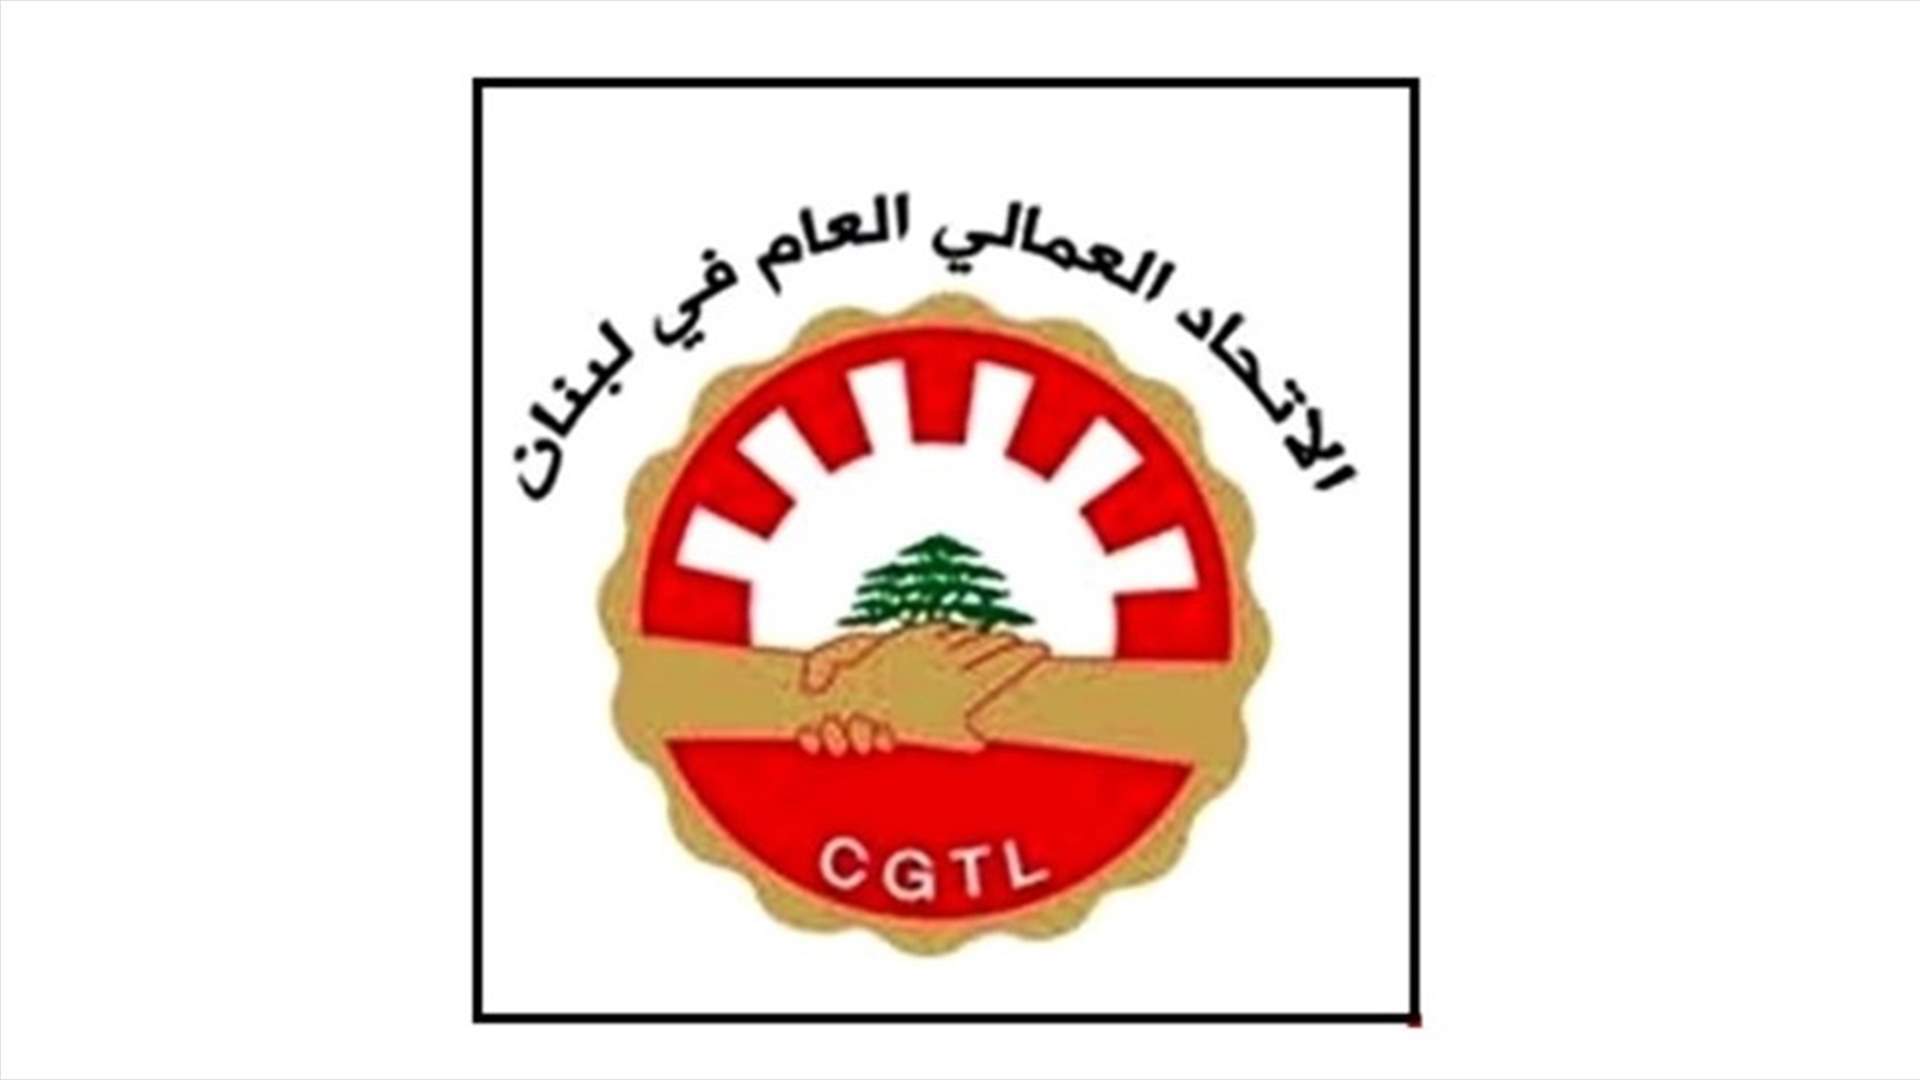 الاتحاد العمالي: للإسراع بتشكيل حكومة إنقاذ اقتصادي فاللبنانيون باتوا متسولين في بلدهم